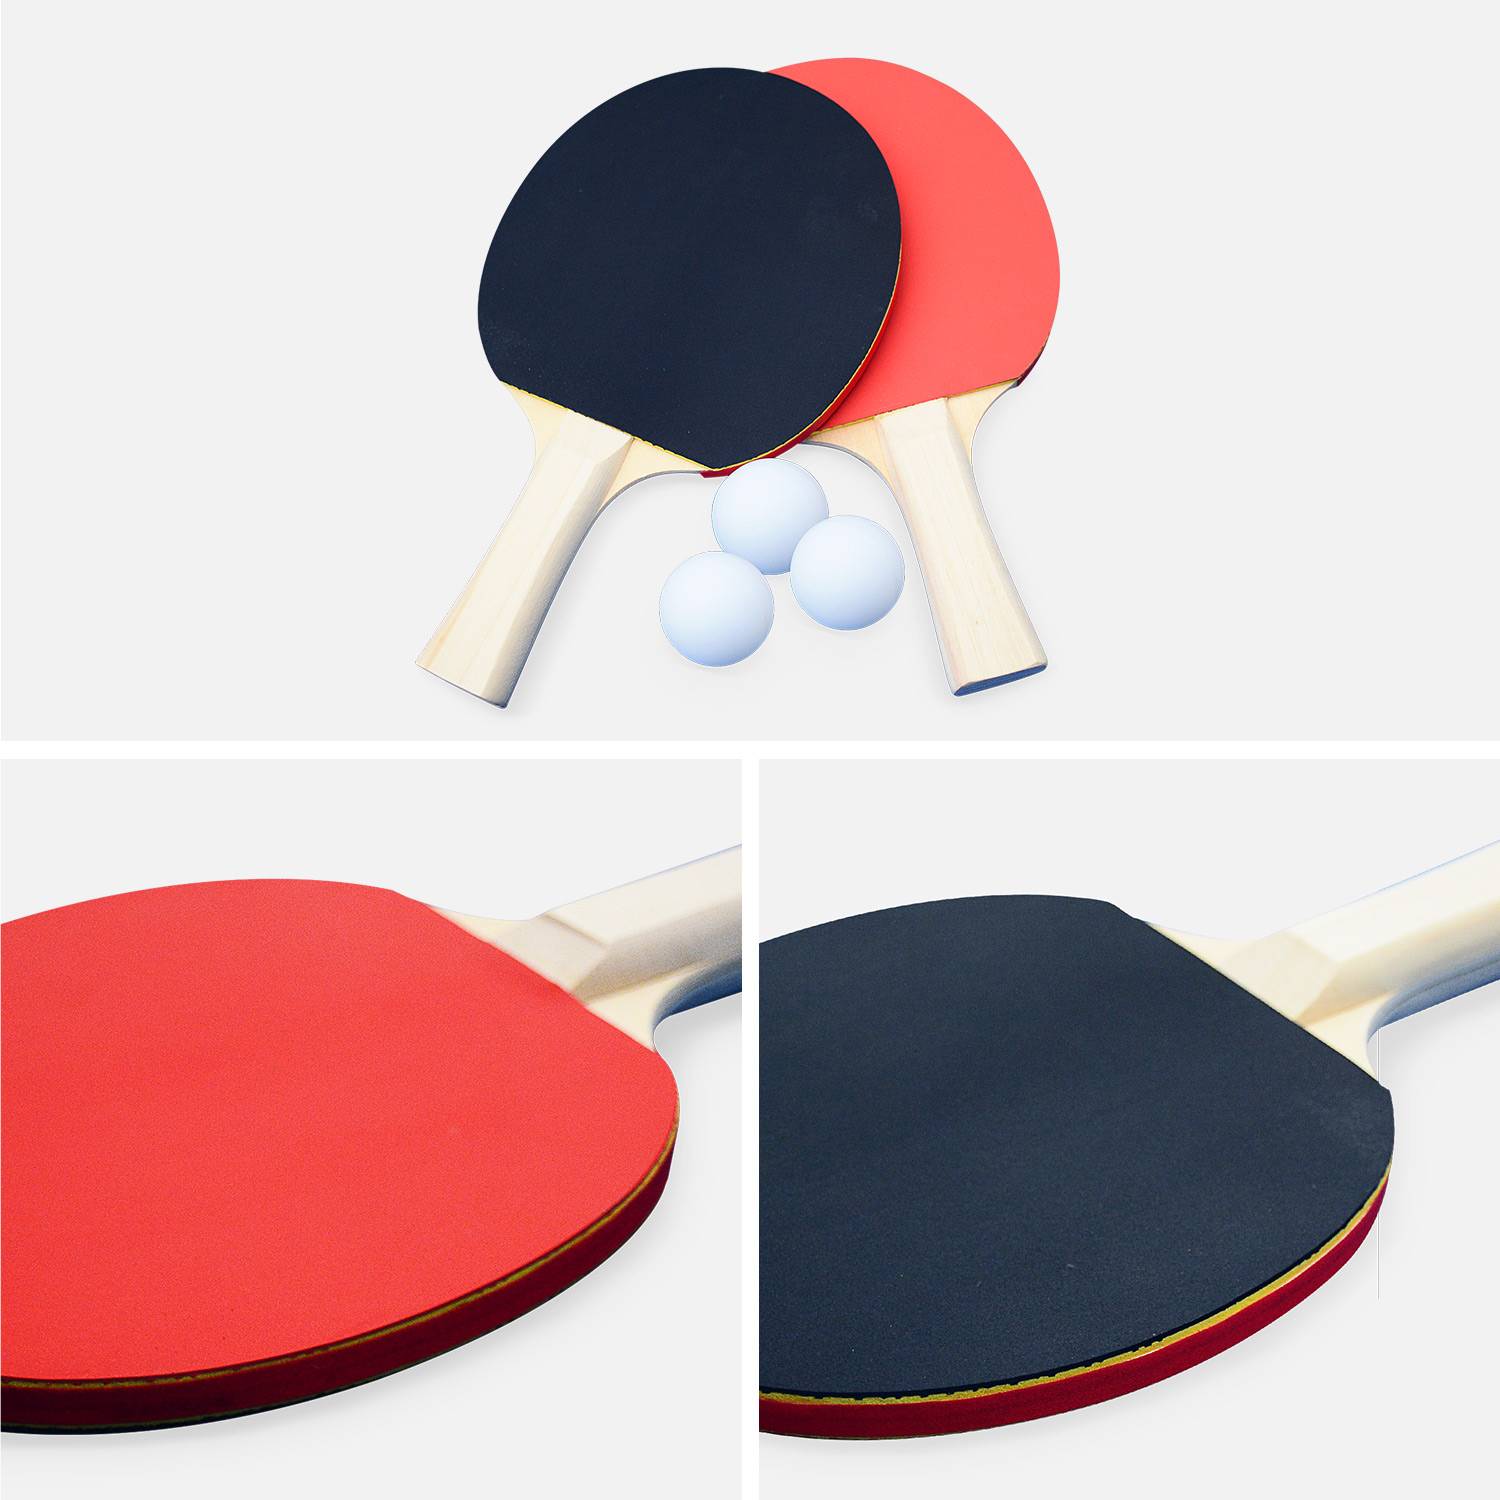 Table de ping pong INDOOR grise pour utilisation intérieure + Housse en PVC + 2 raquettes et 3 balles, sport tennis de table Photo5